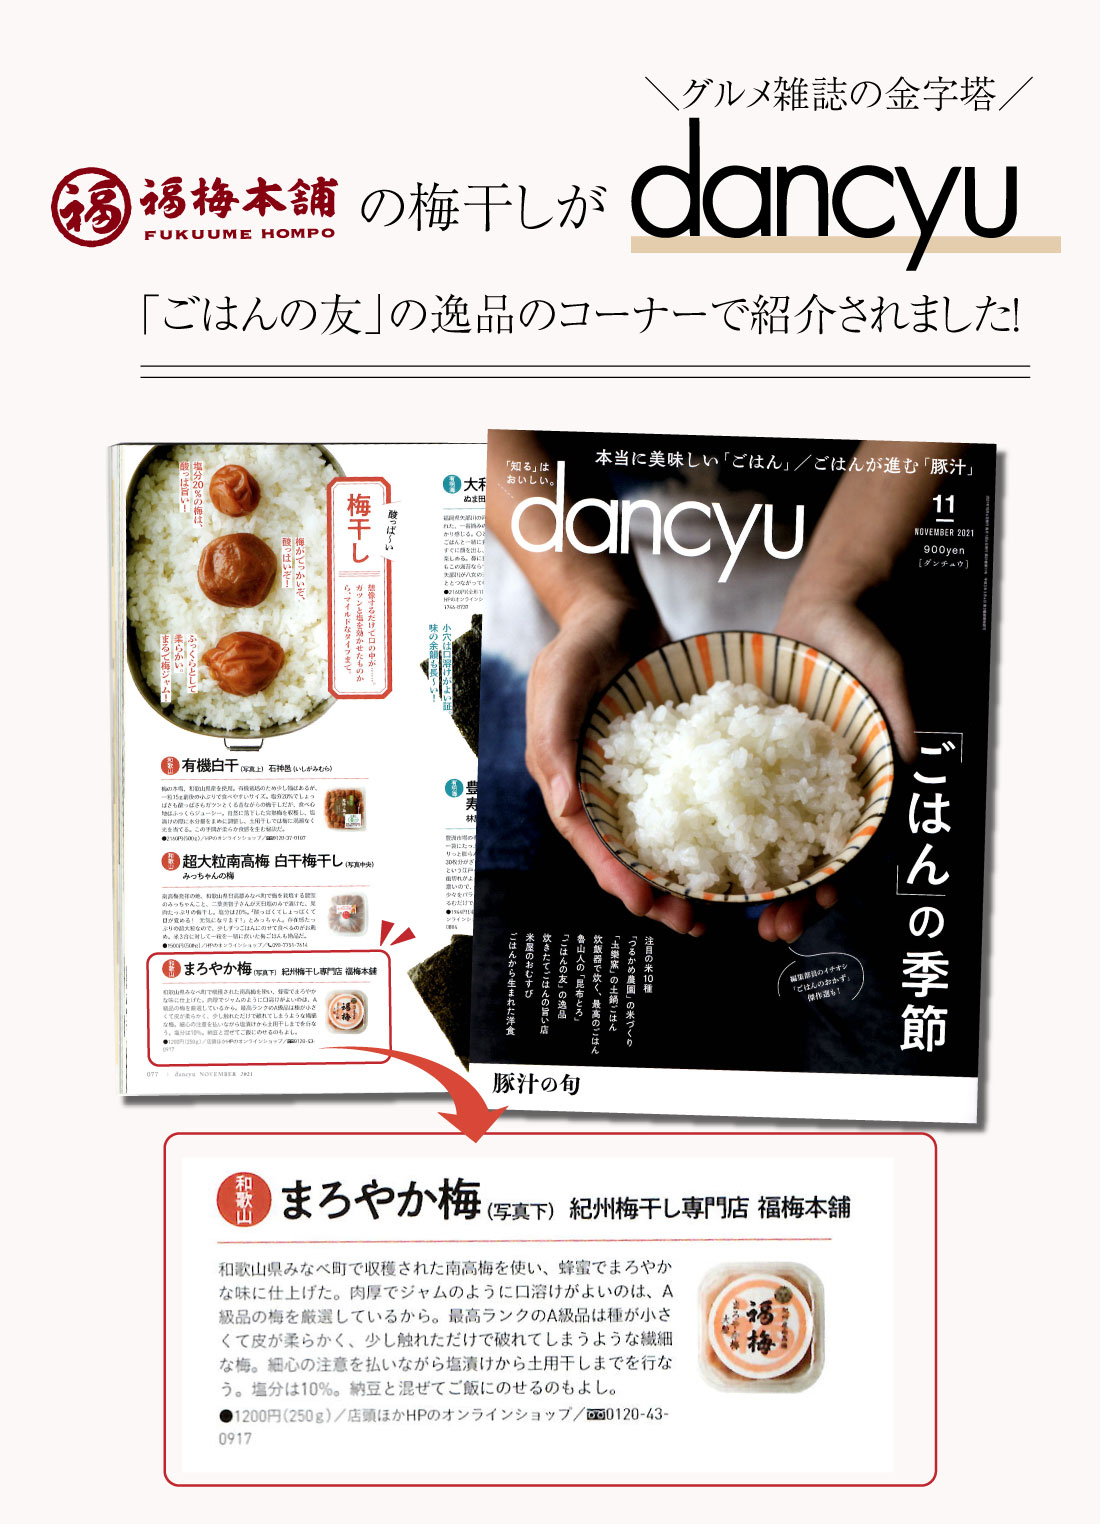 福梅本舗の梅干しが雑誌「dancyu」にて紹介されました